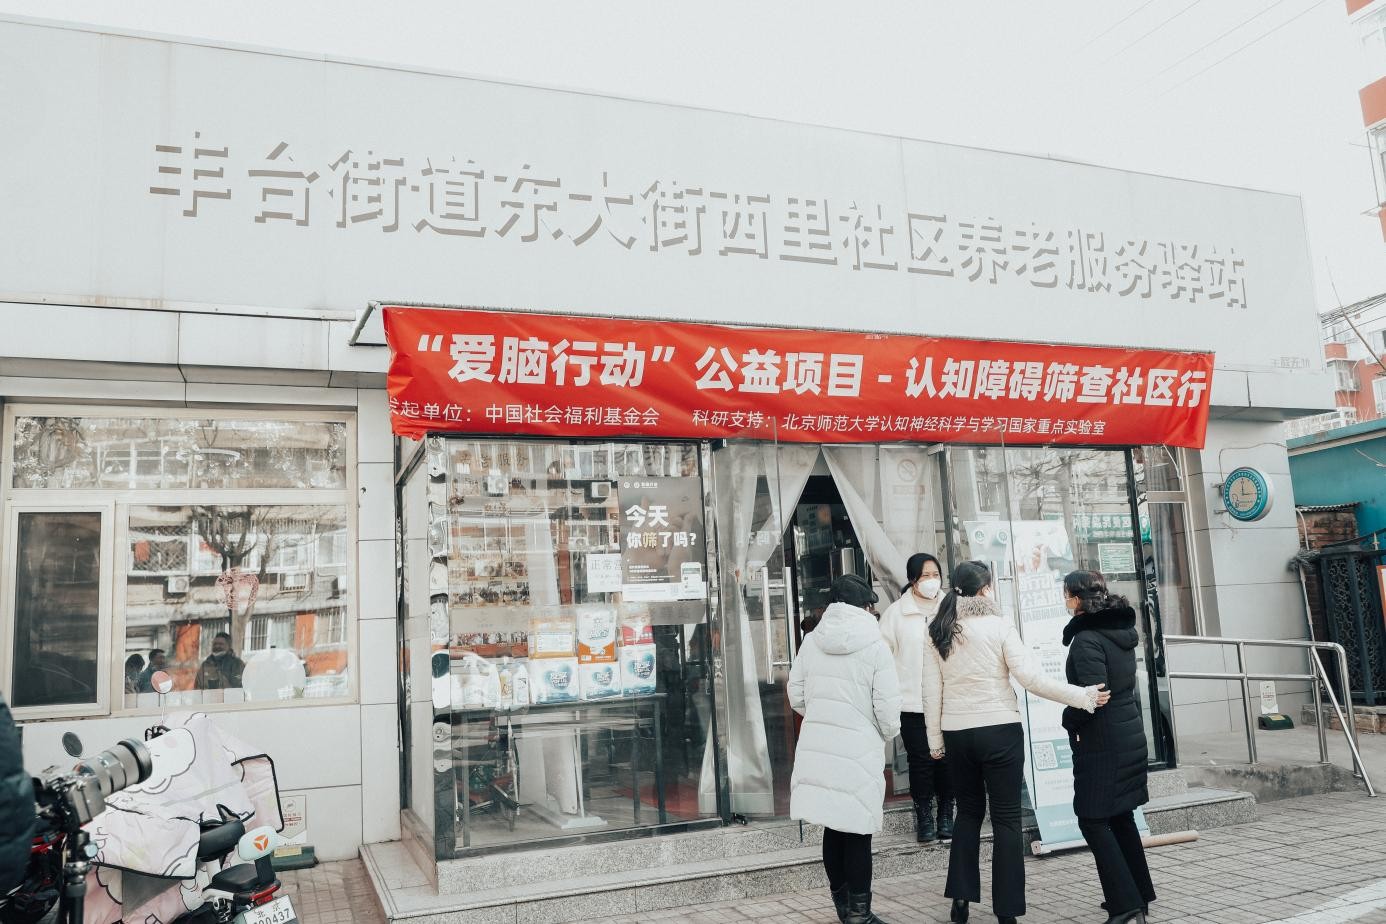 中国社会福利基金会“爱脑行动”公益项目正式启动